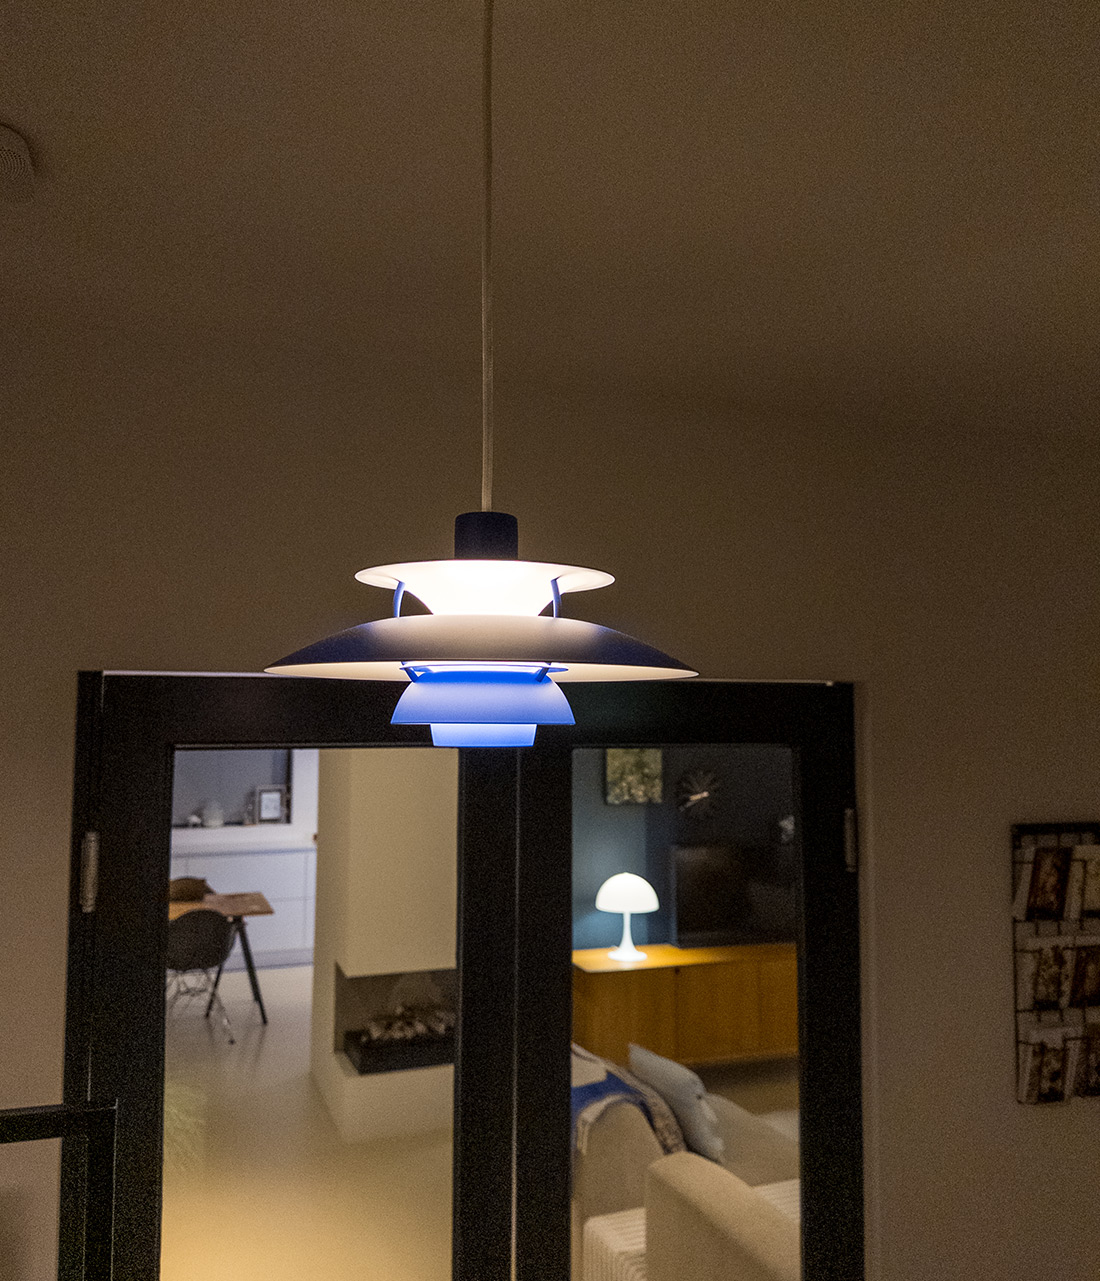 zo ziet een designlamp er uit